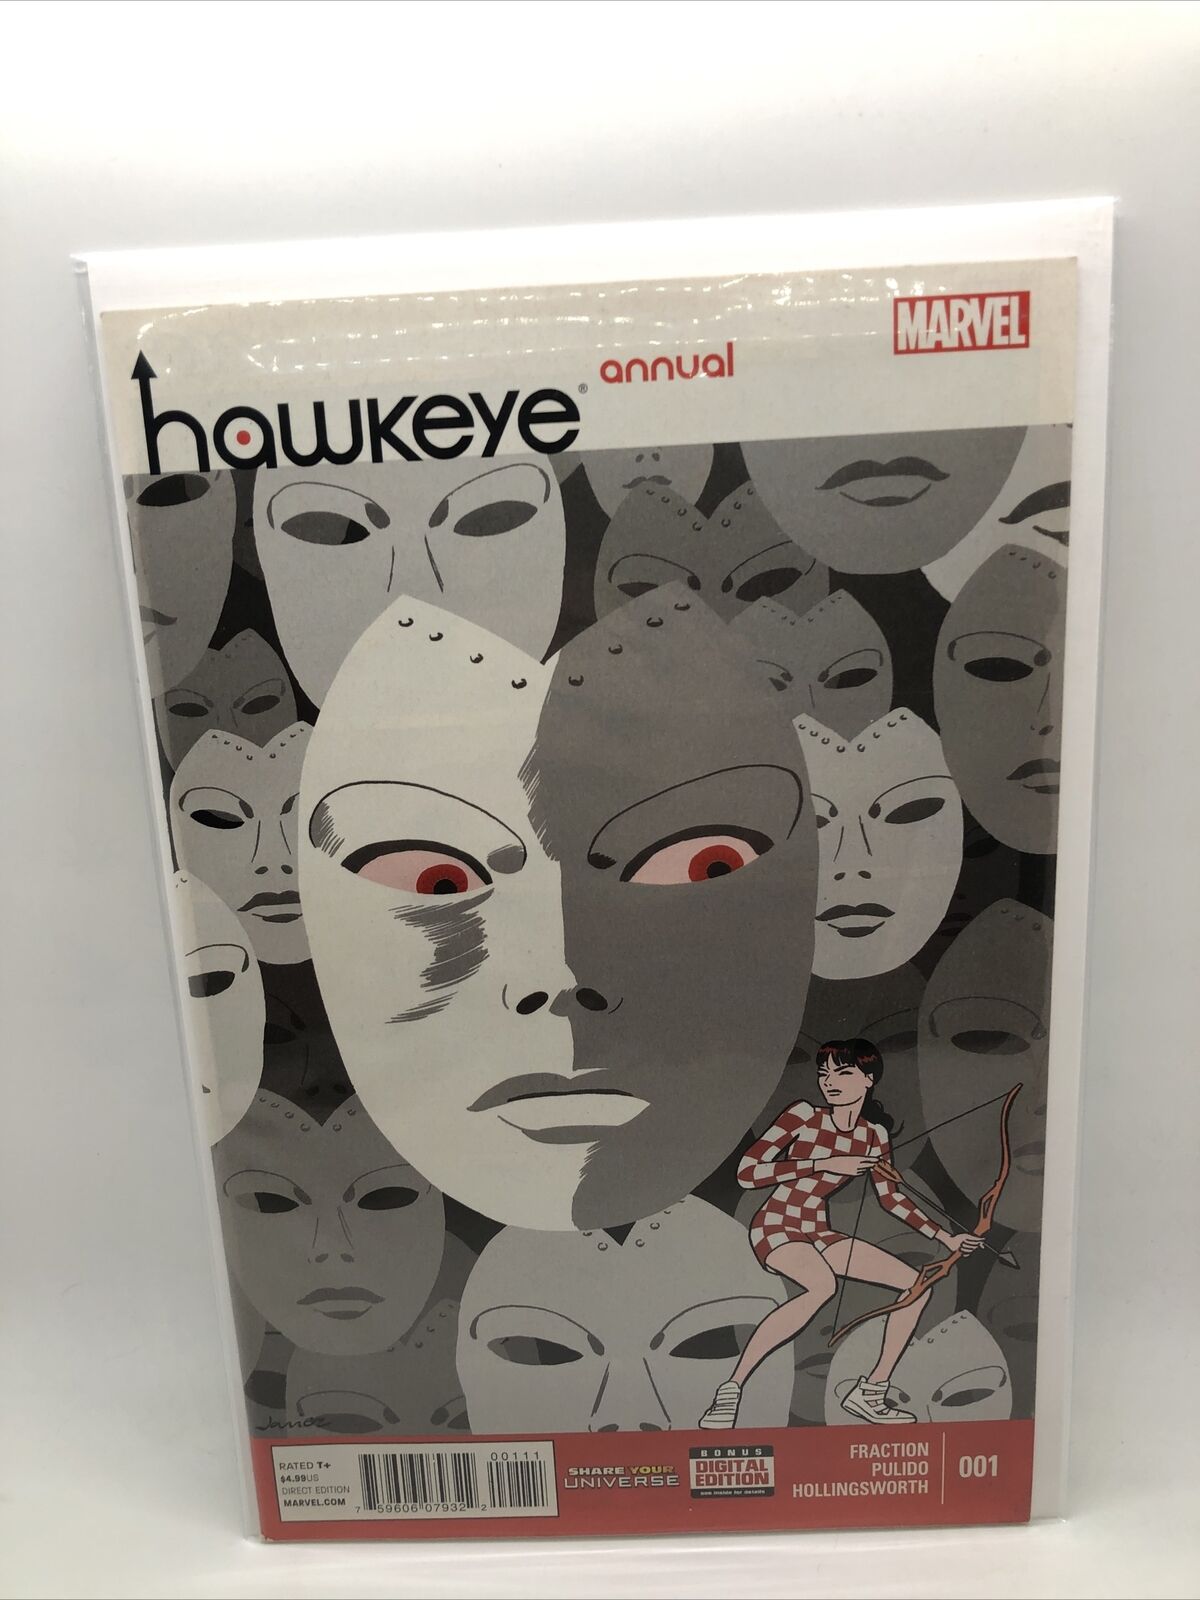 Marvel Comics Hawkeye Hawkeye Annual #1 | Fraction, Pulido, Hollingsworth